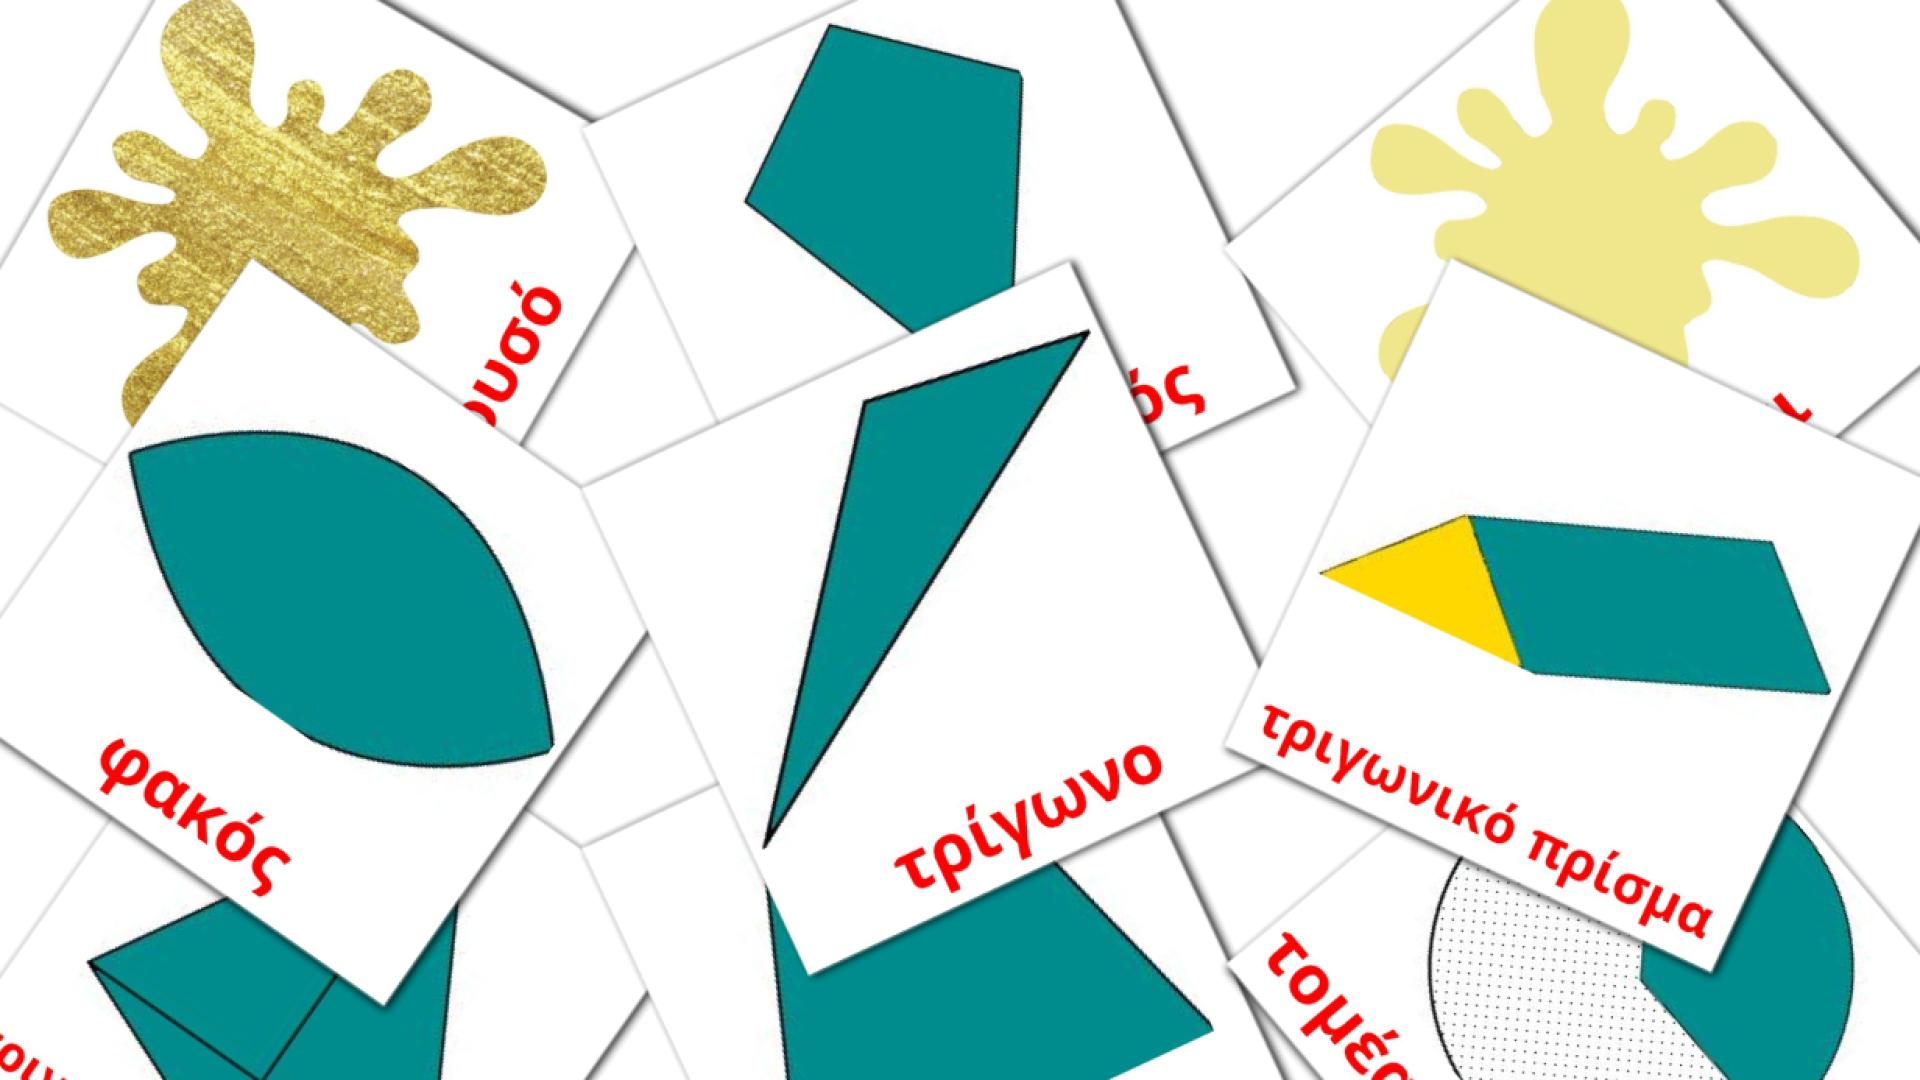 Χρώματα και σχήματα Vocabulário em grego Flashcards